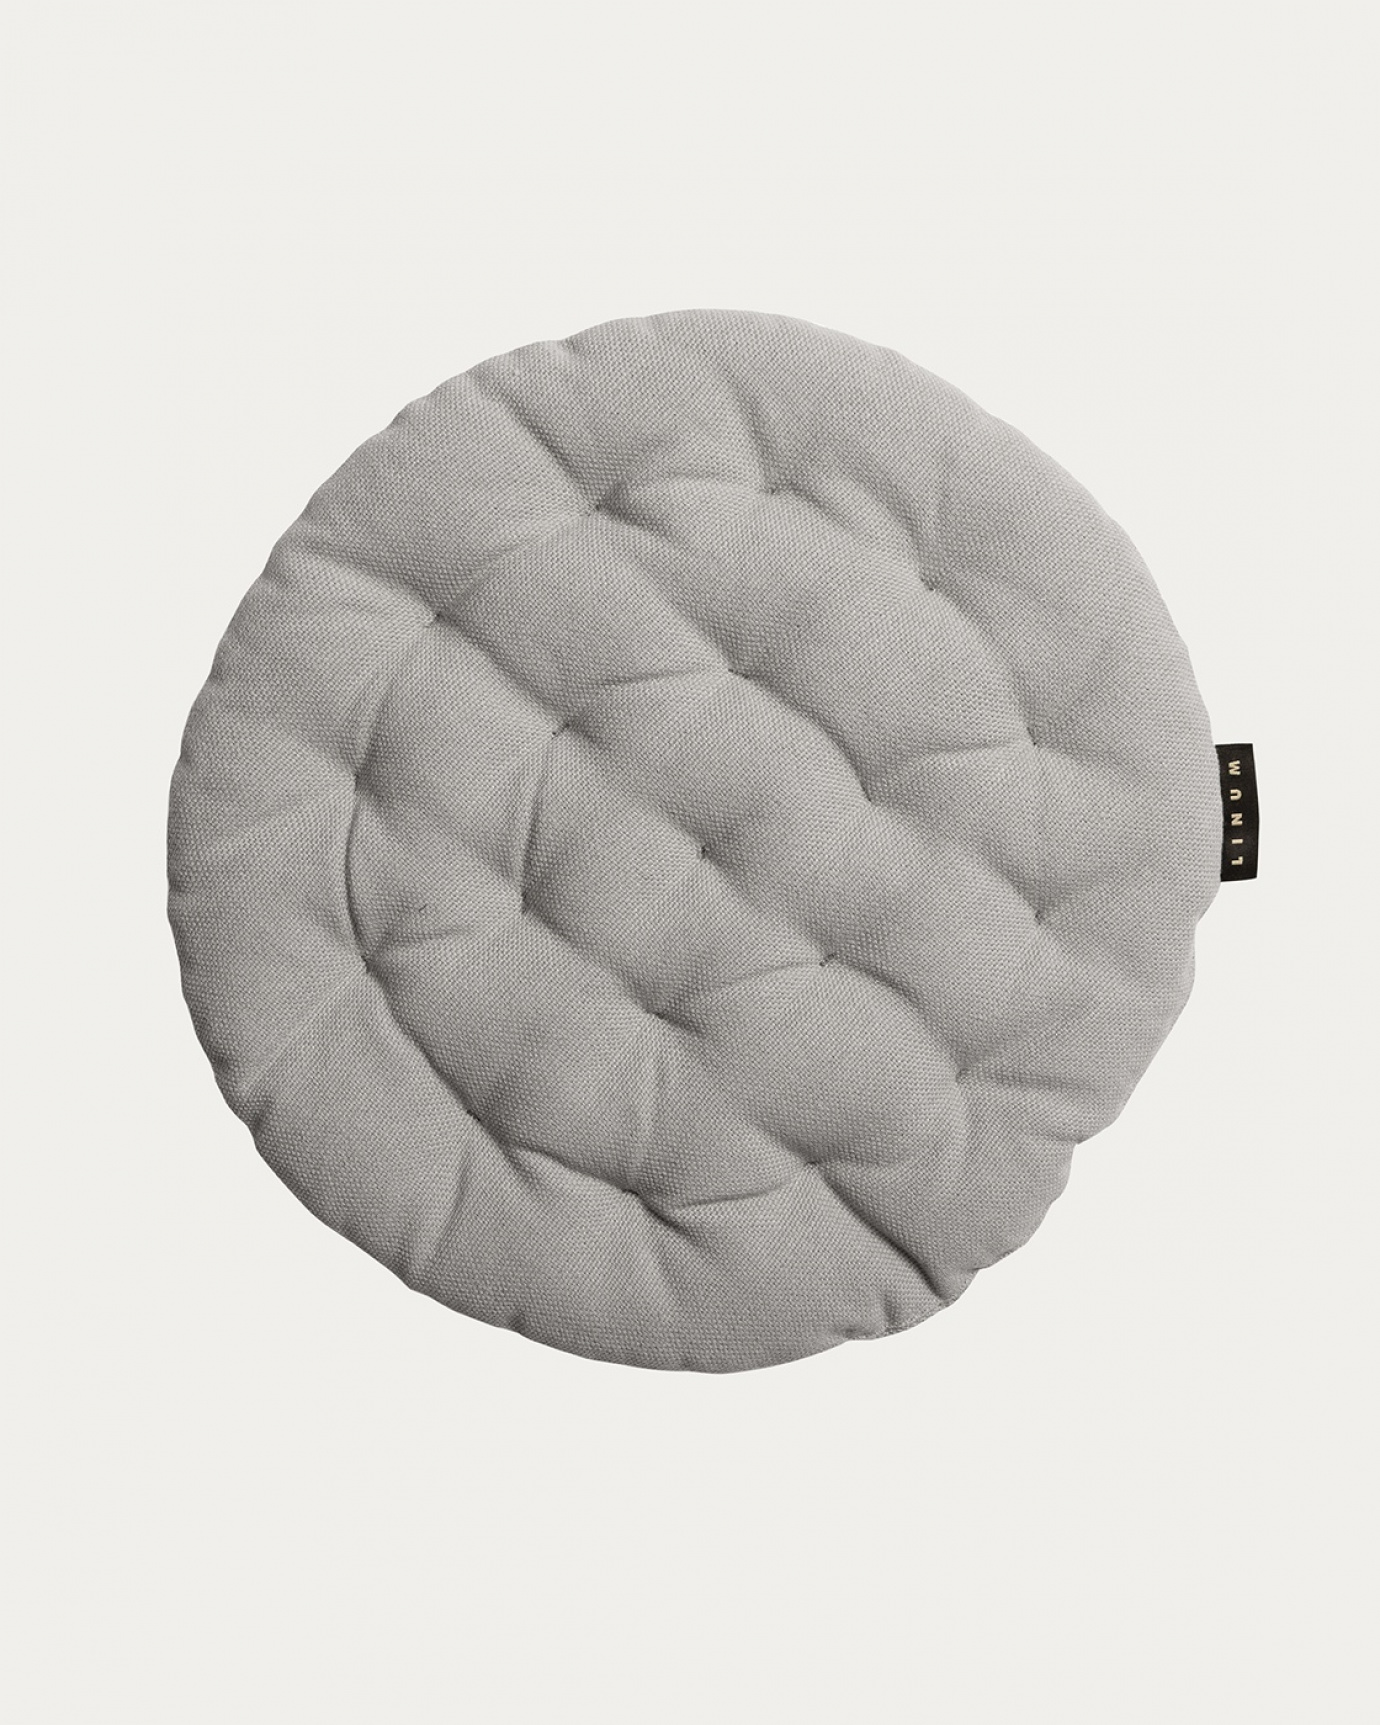 Immagine prodotto grigio chiaro PEPPER cuscini sedie di cotone con imbottitura in poliestere di LINUM DESIGN. Dimensioni ø37 cm.